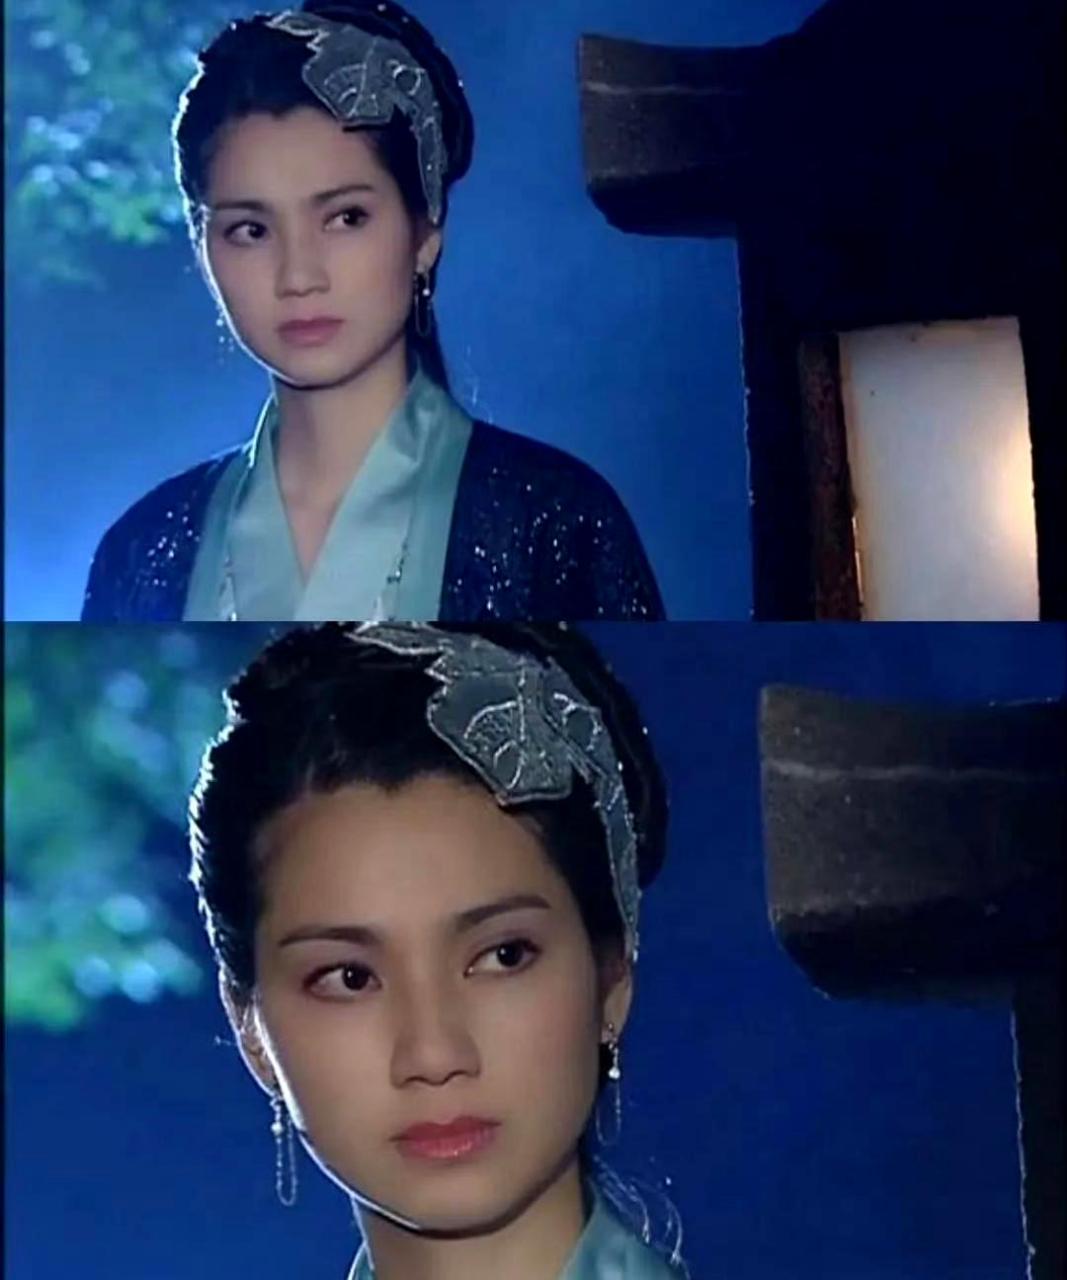 《刁蛮公主》中,洪欣饰演女主角司徒静的师傅,古装造型非常大气美丽